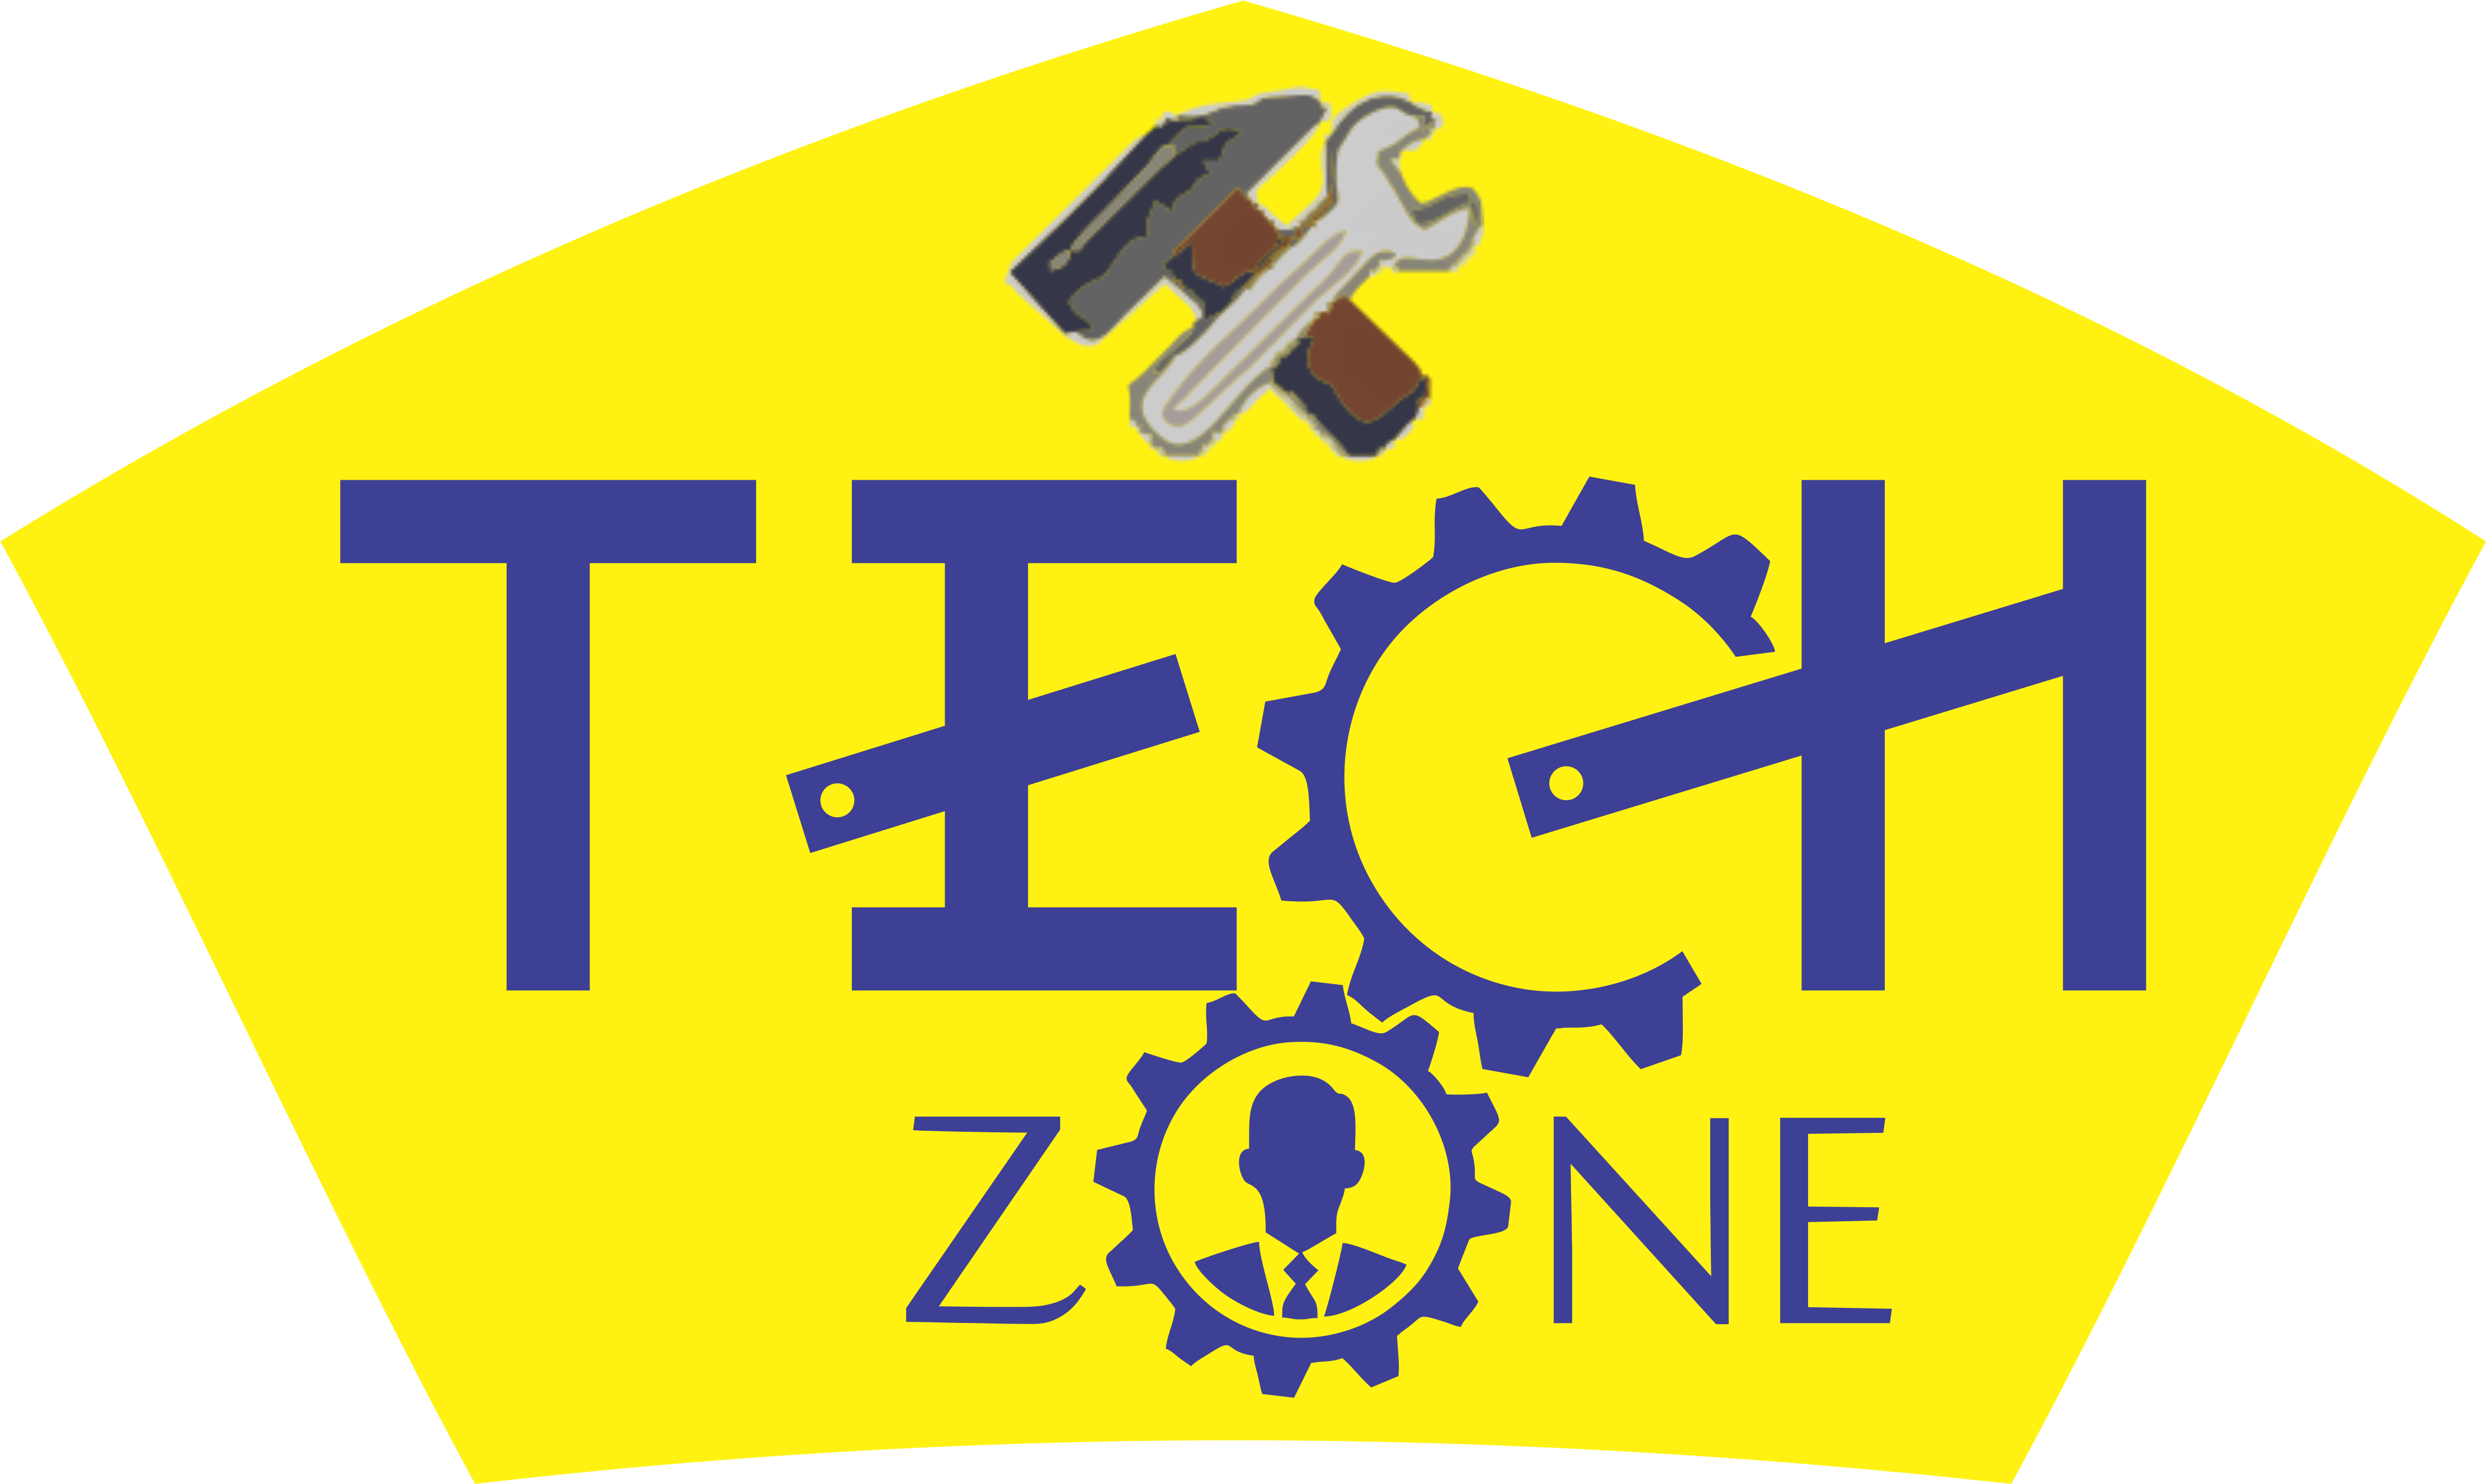 Techzones – Industrial Training Institute